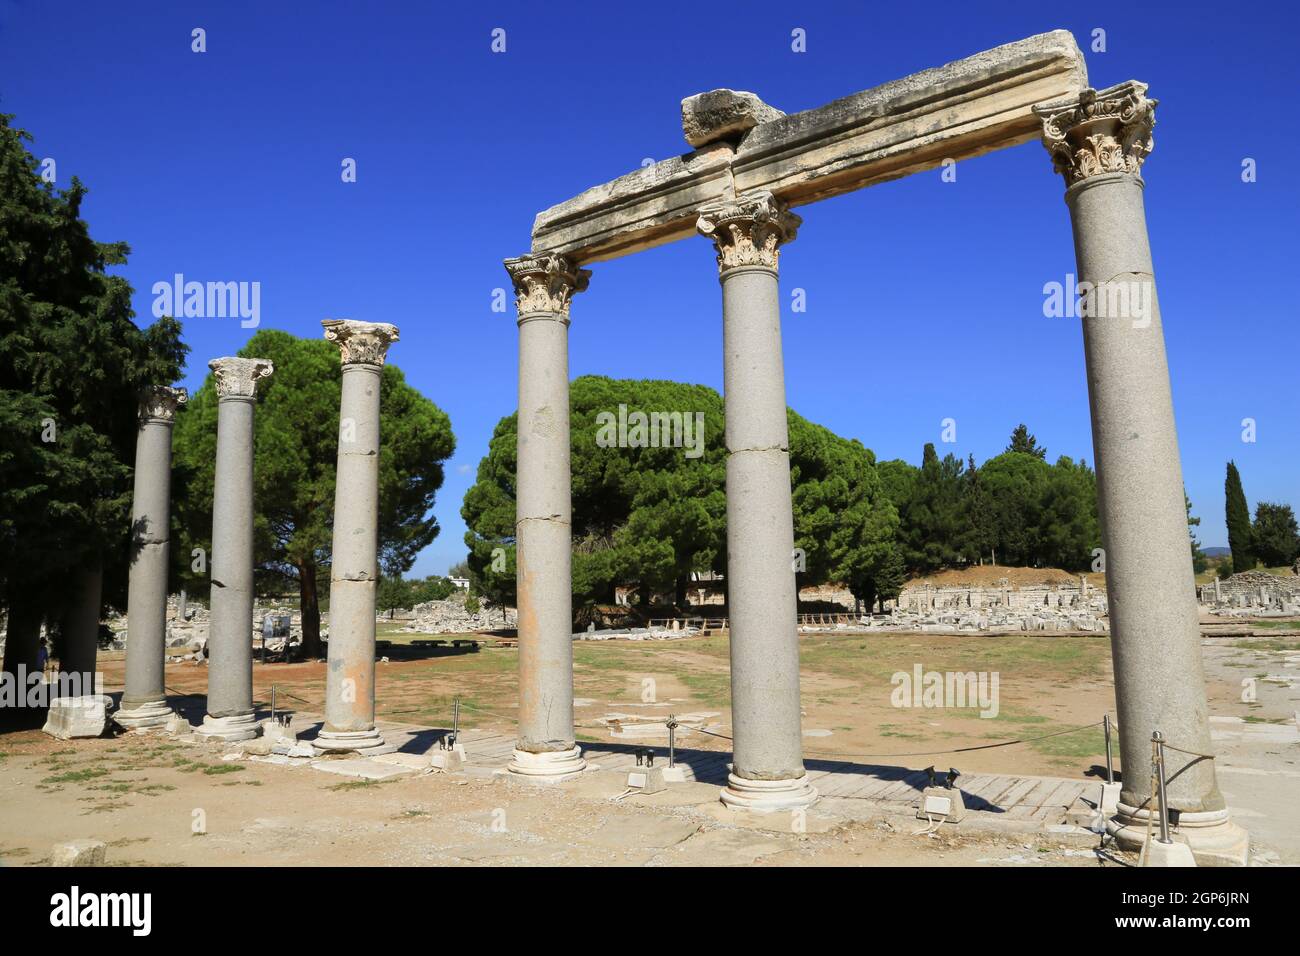 Kolonnade am Eingang zur Agora (griechischer öffentlicher Raum) in Ephesus, Türkei. Stockfoto